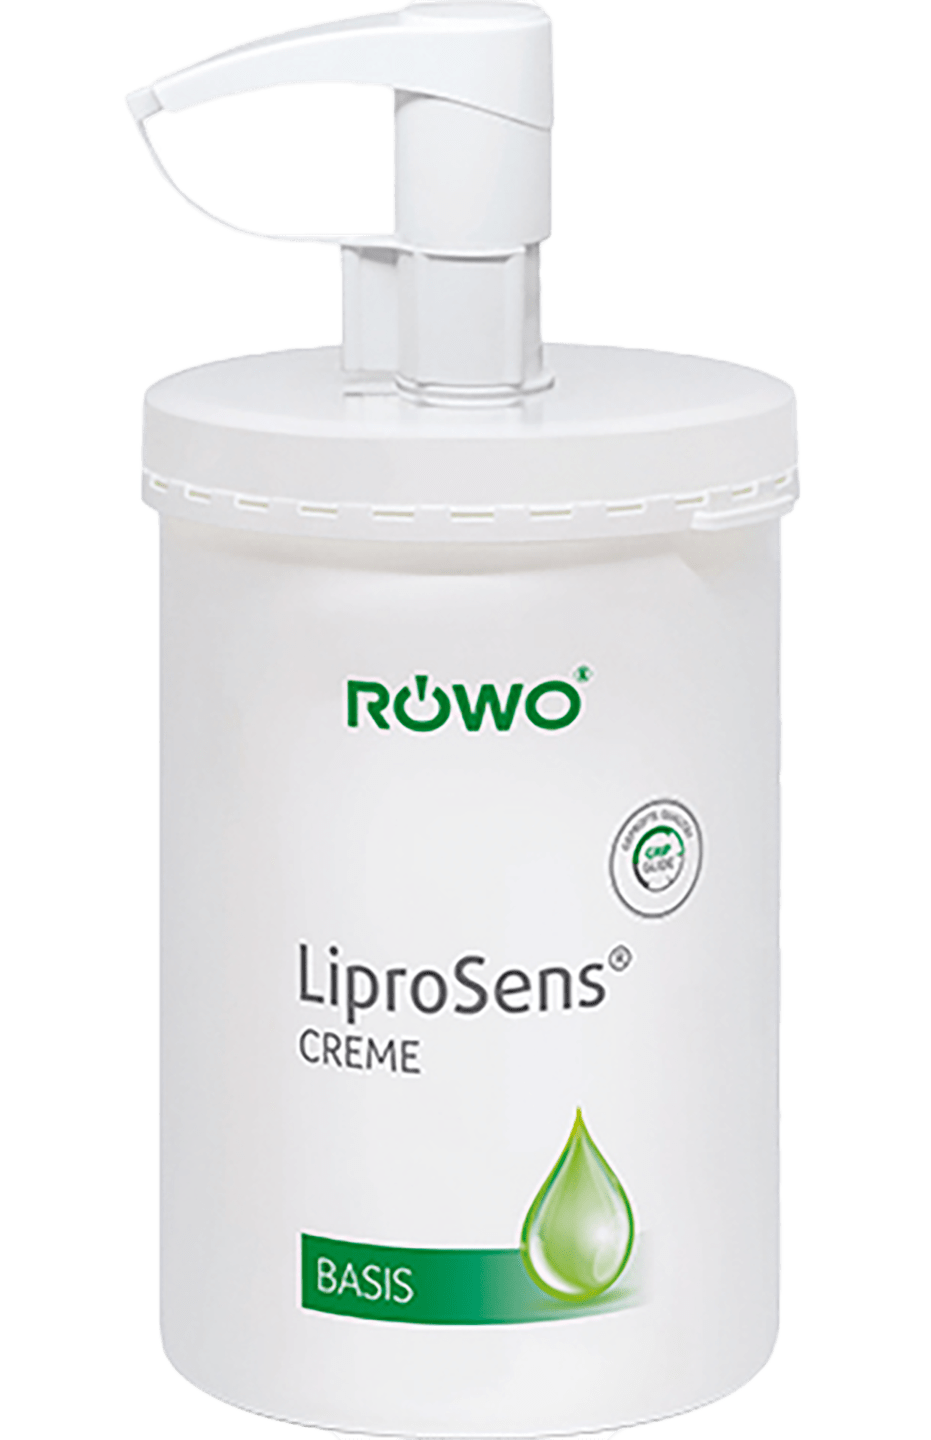 RÖWO - LiproSens Creme Basis